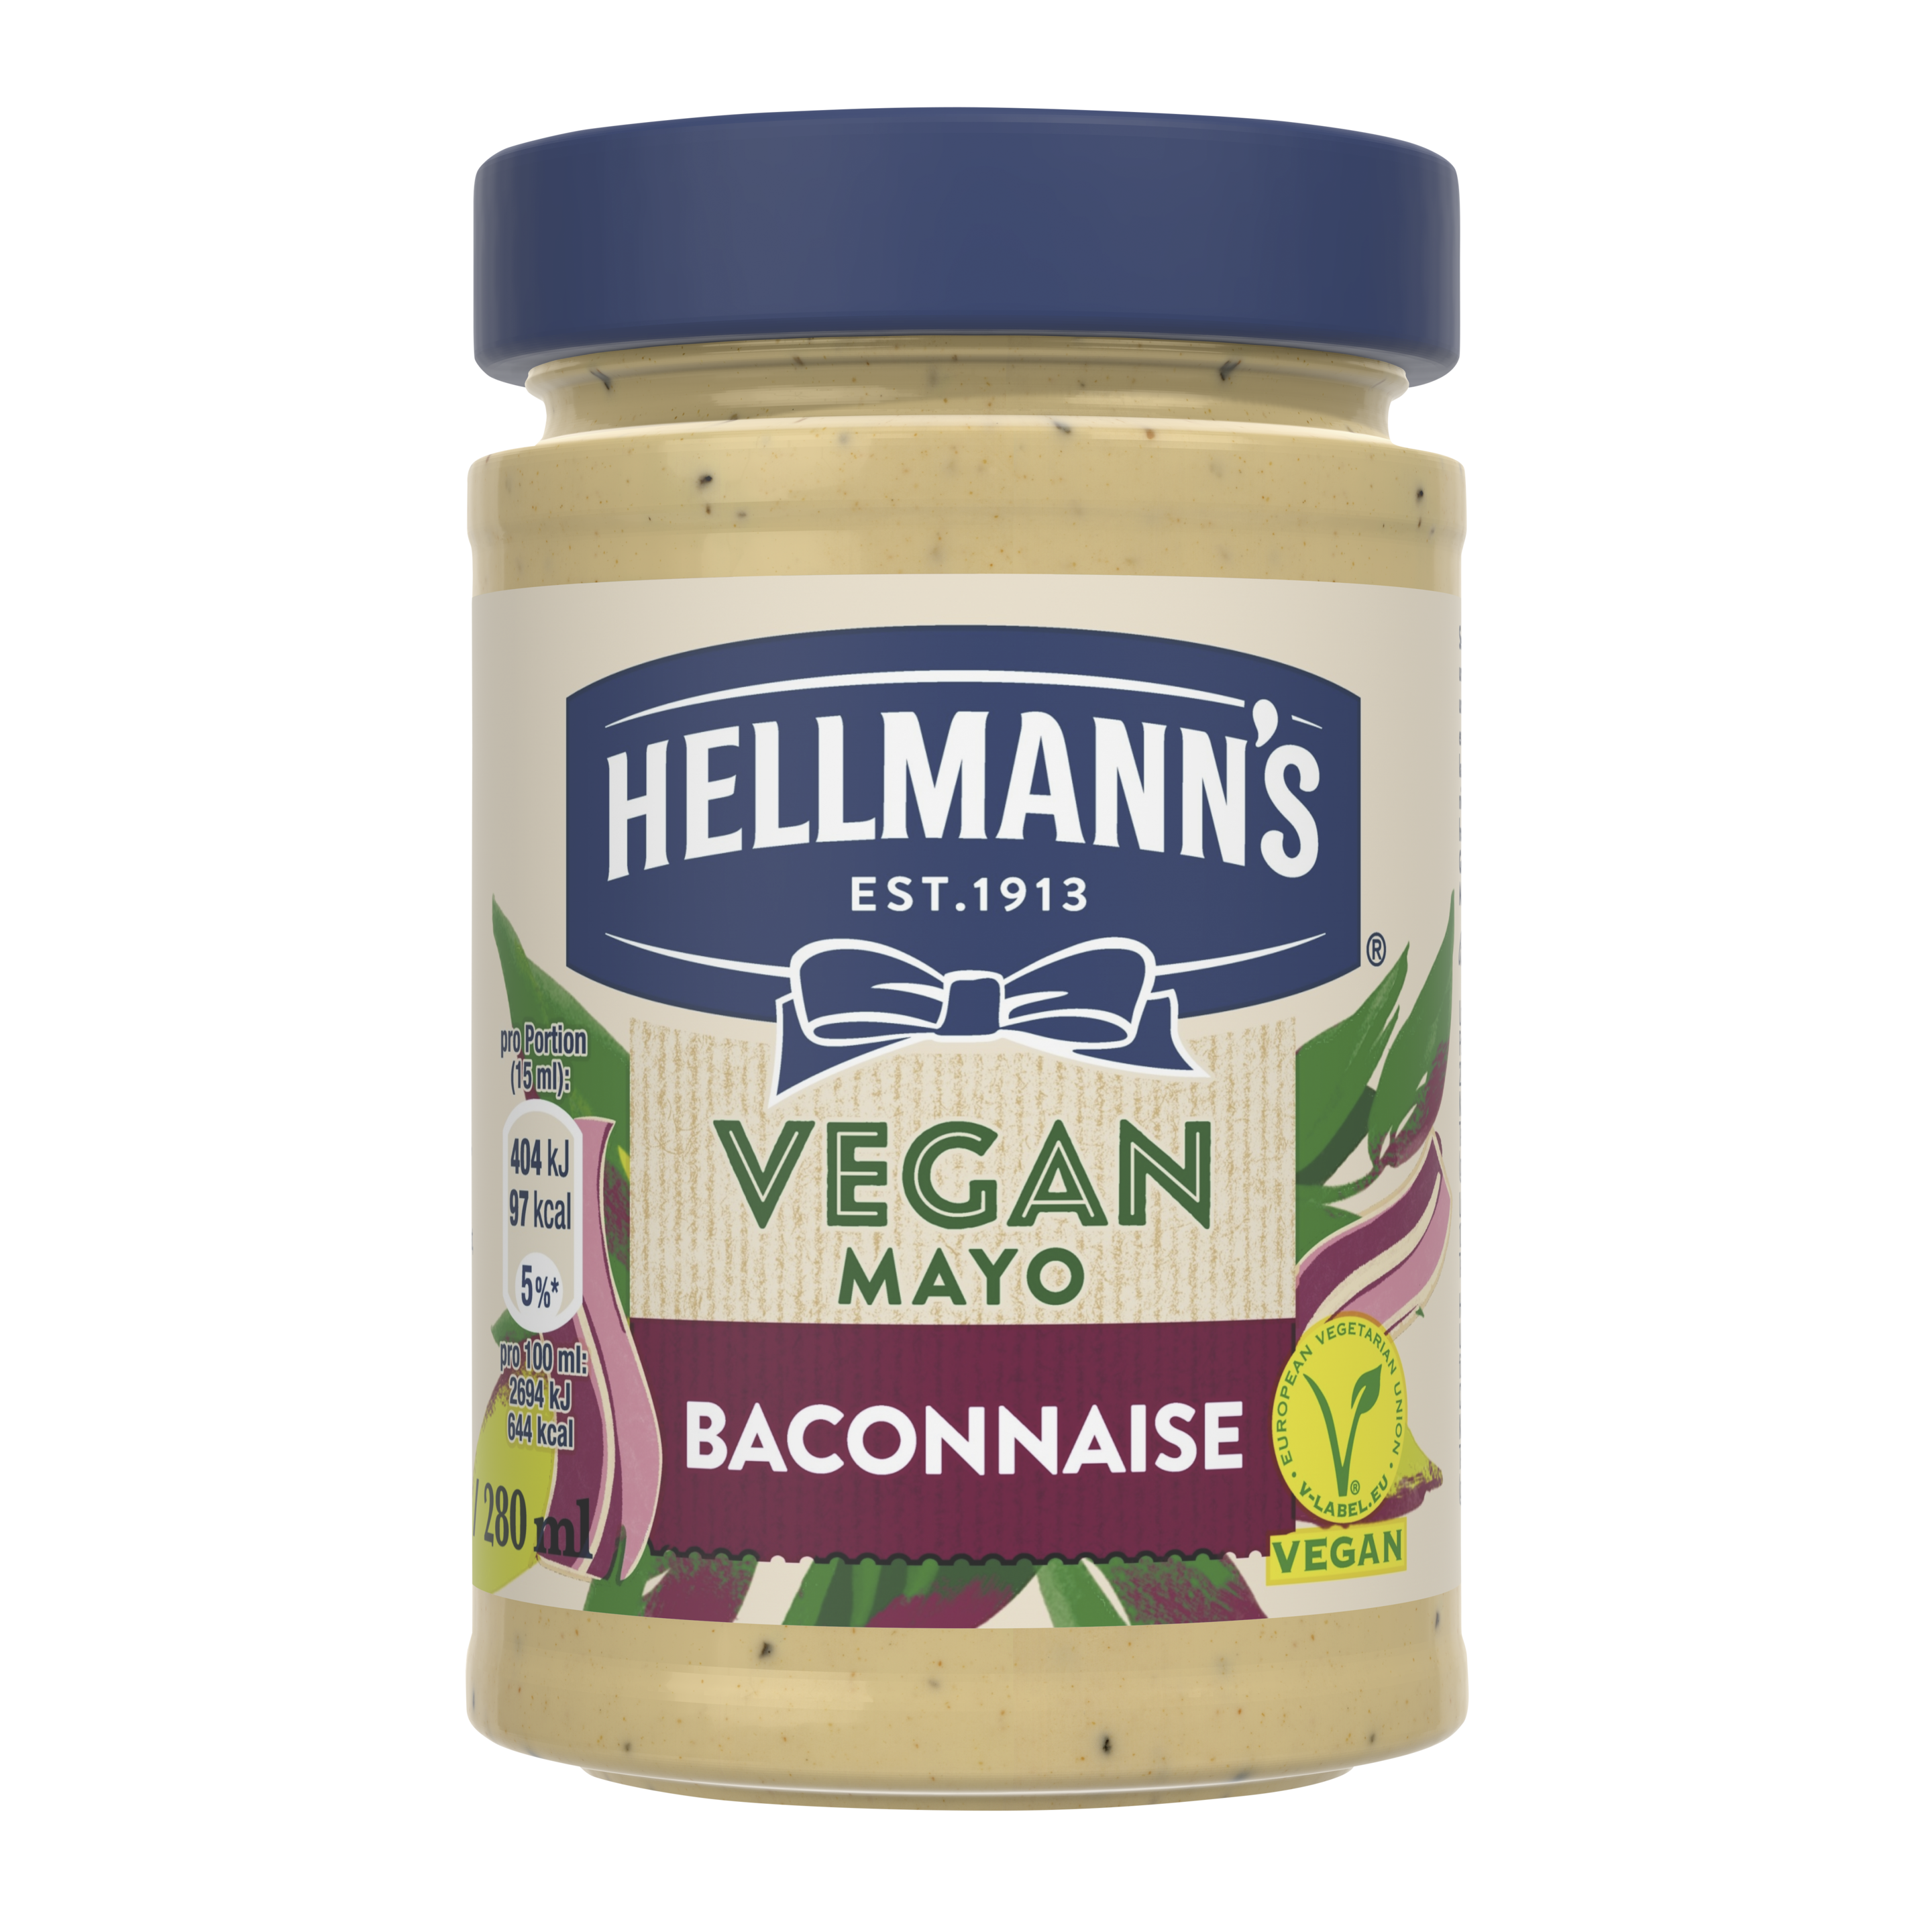 Hellmann's Vegan Mayo Baconnaise